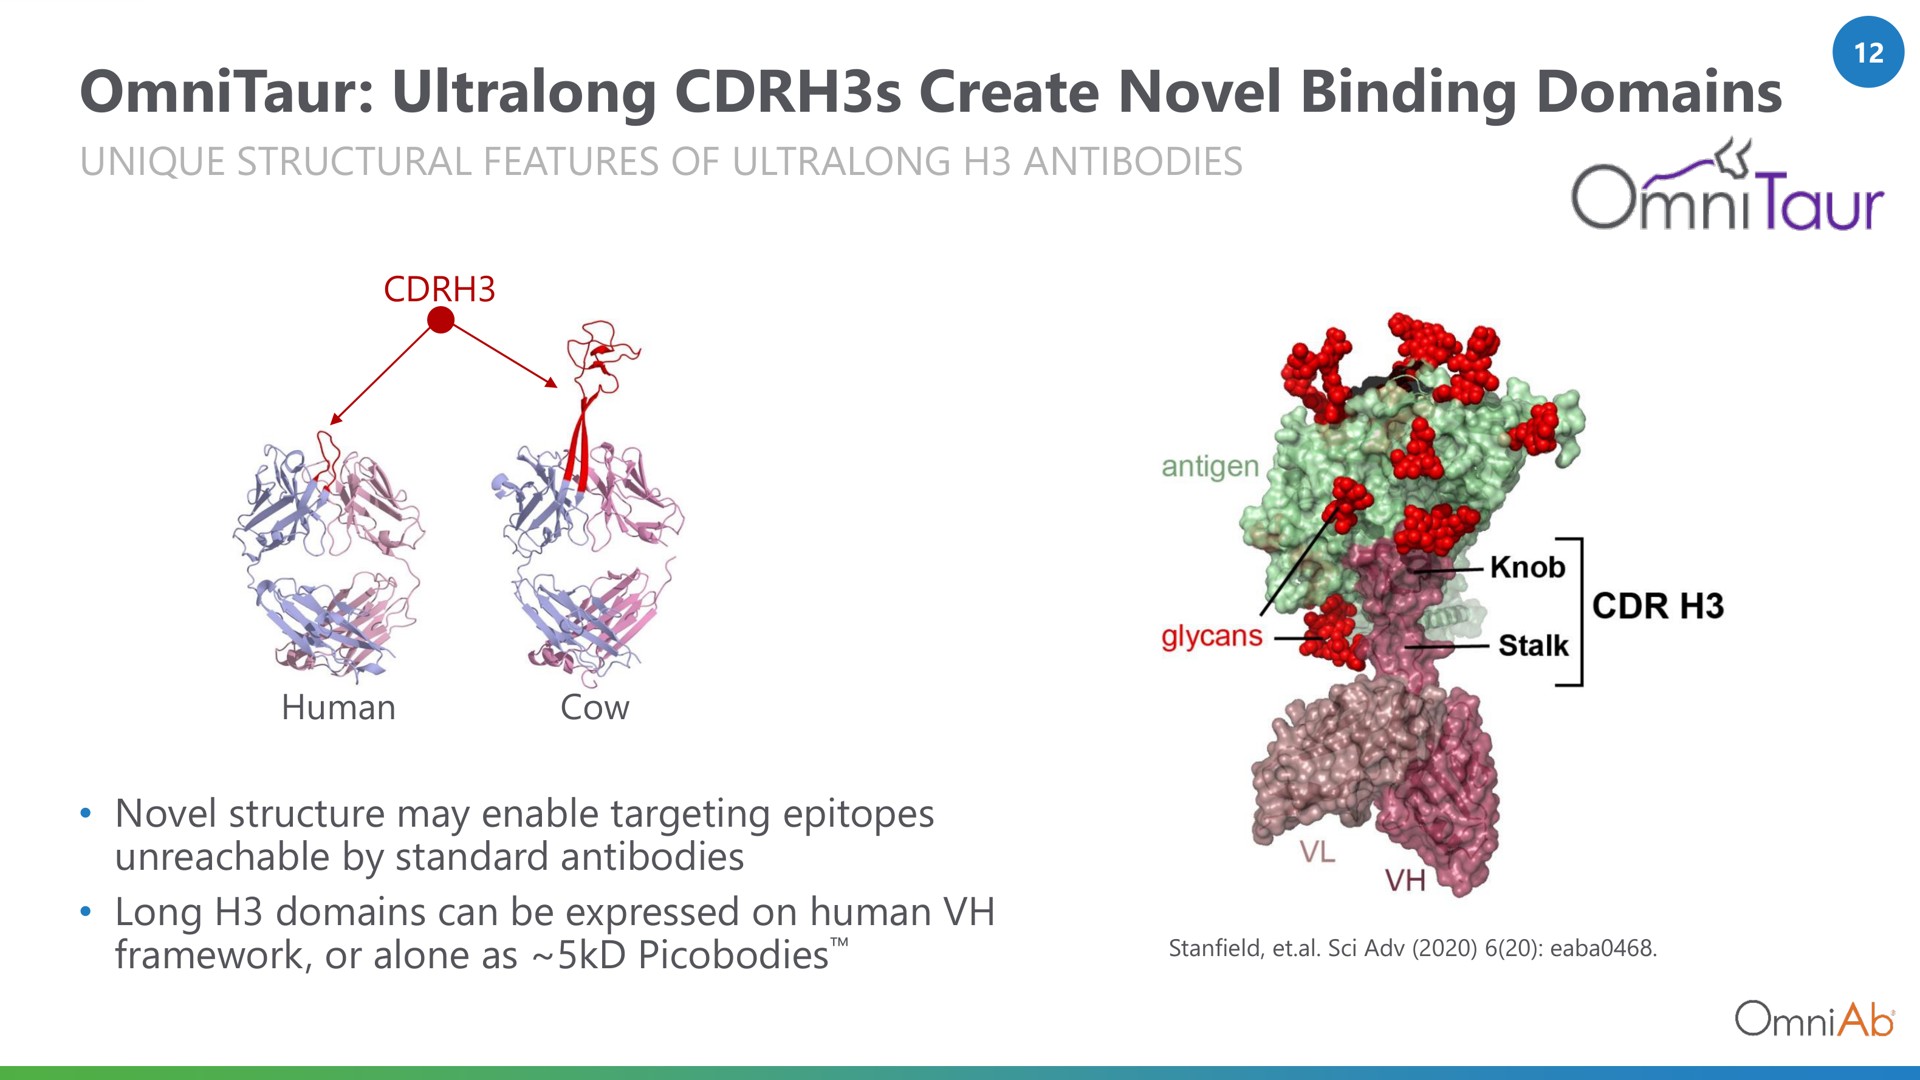 create novel binding domains | OmniAb